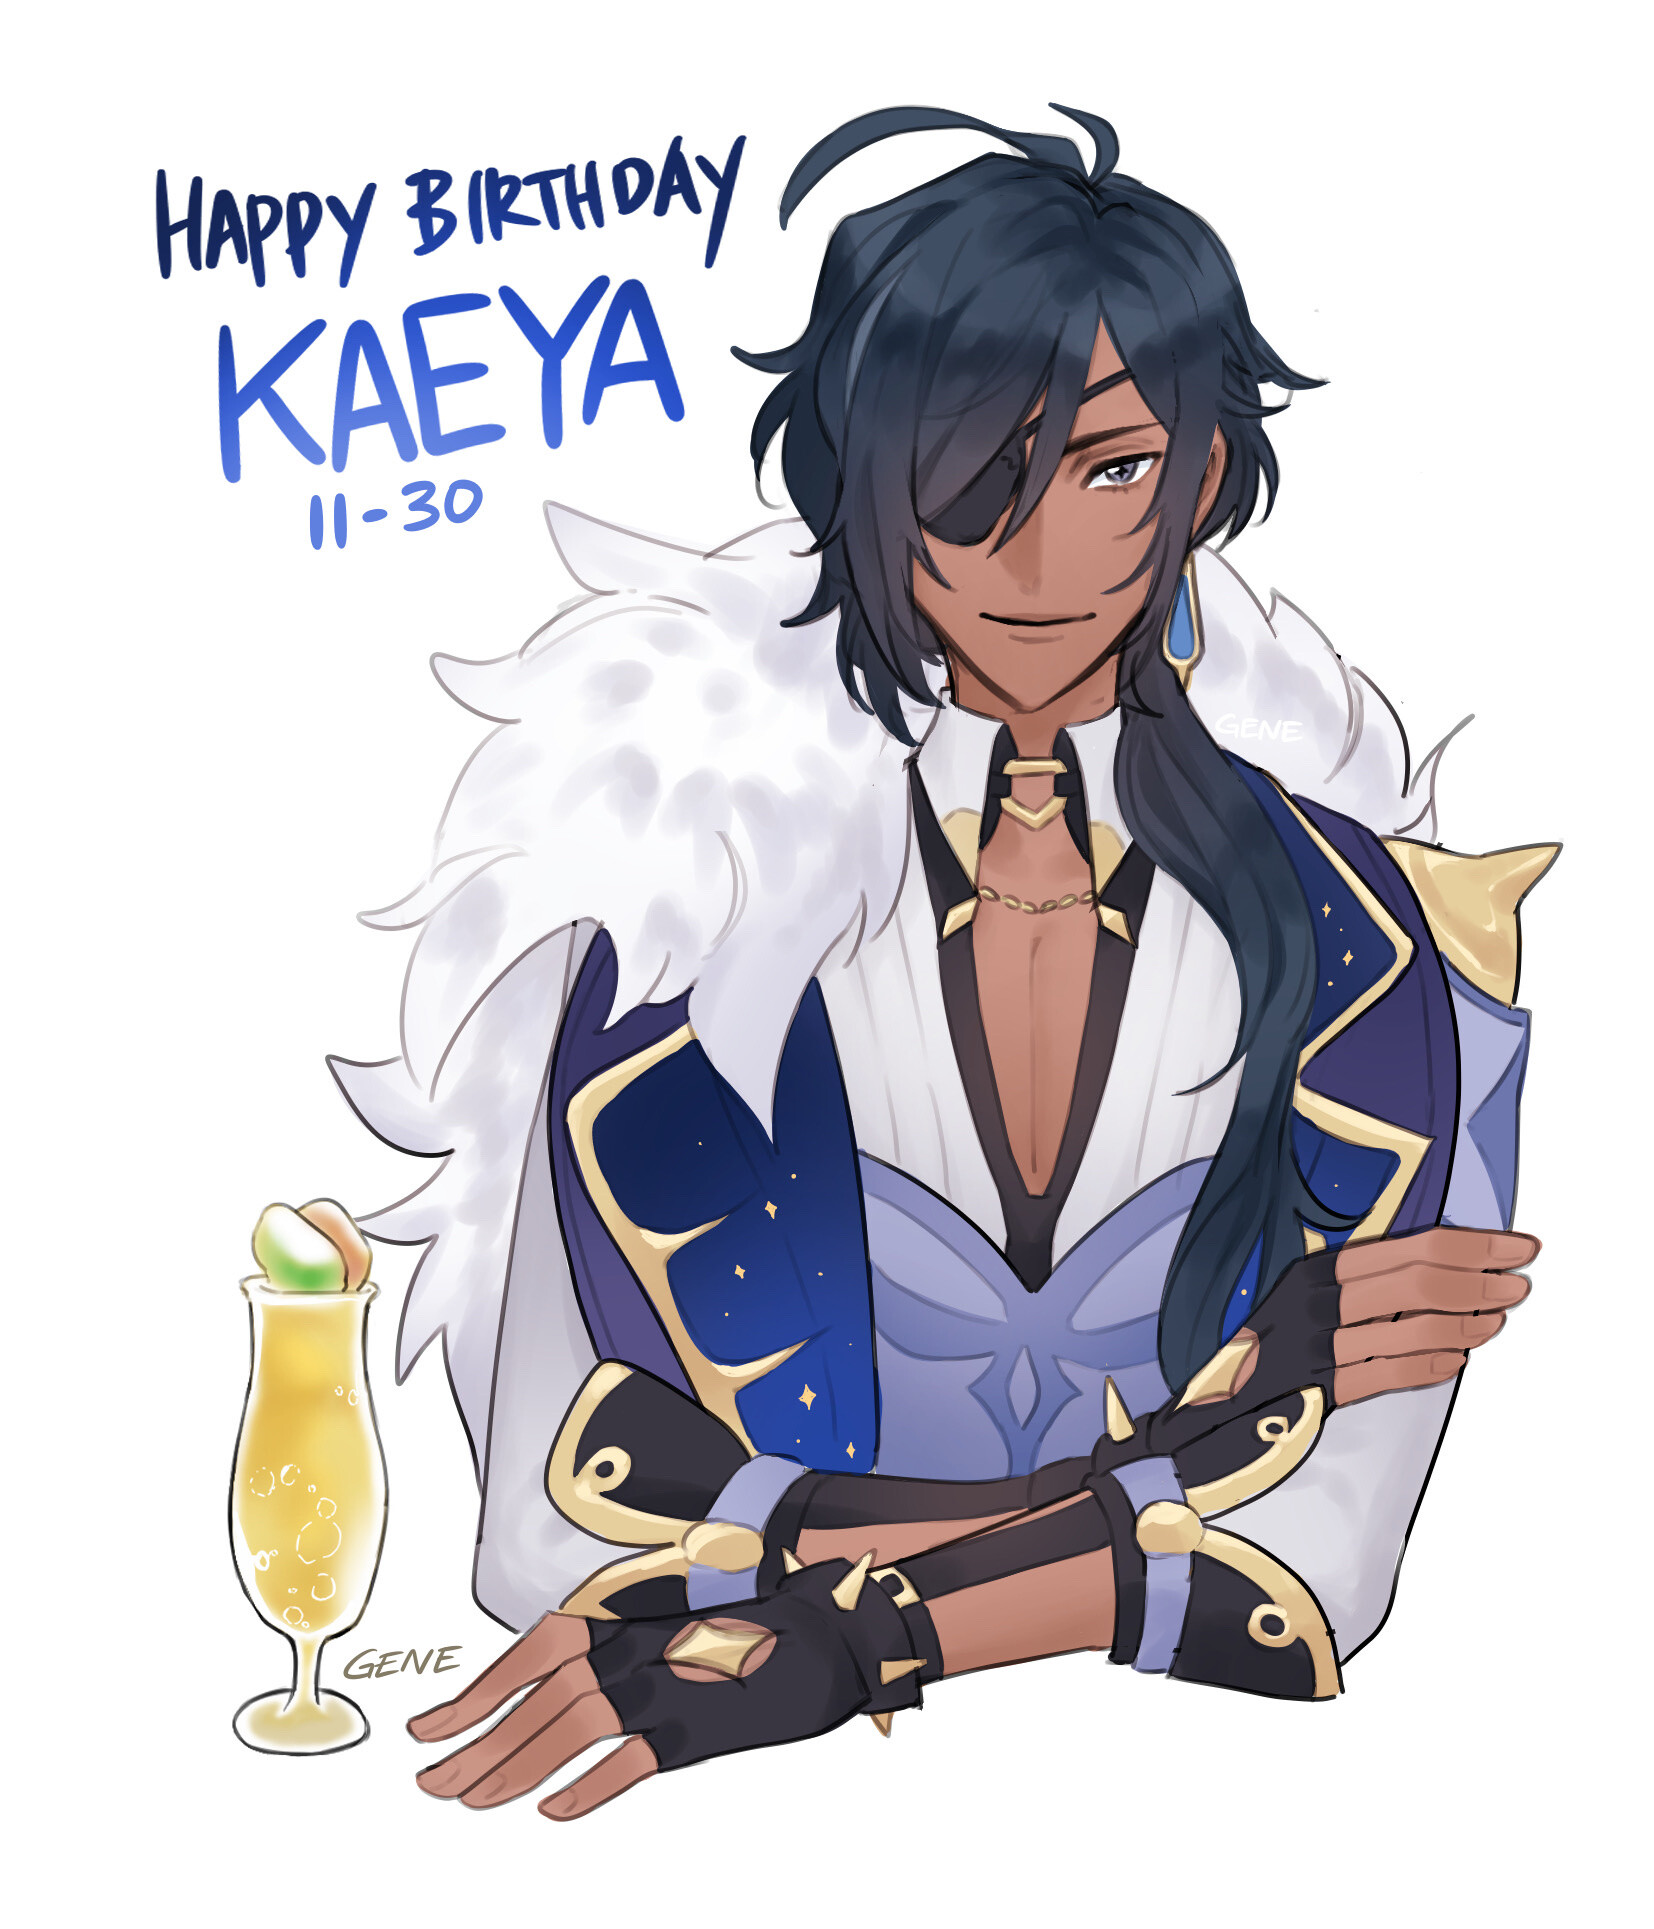 Kaeya birthday